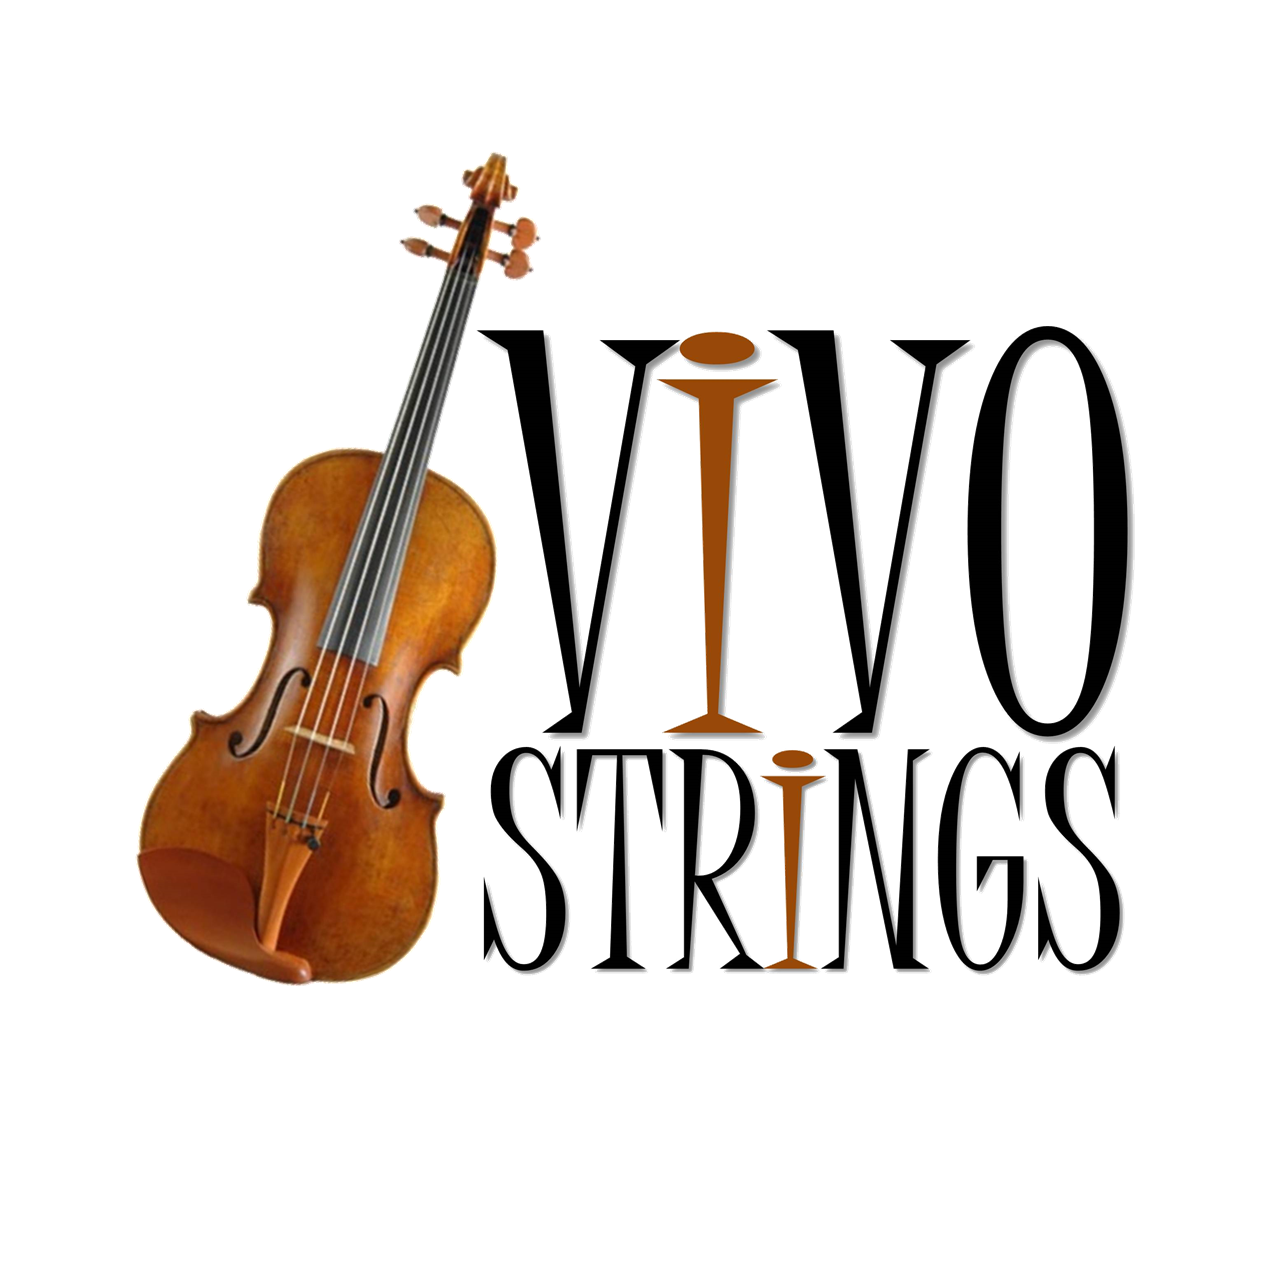 Vivo Strings